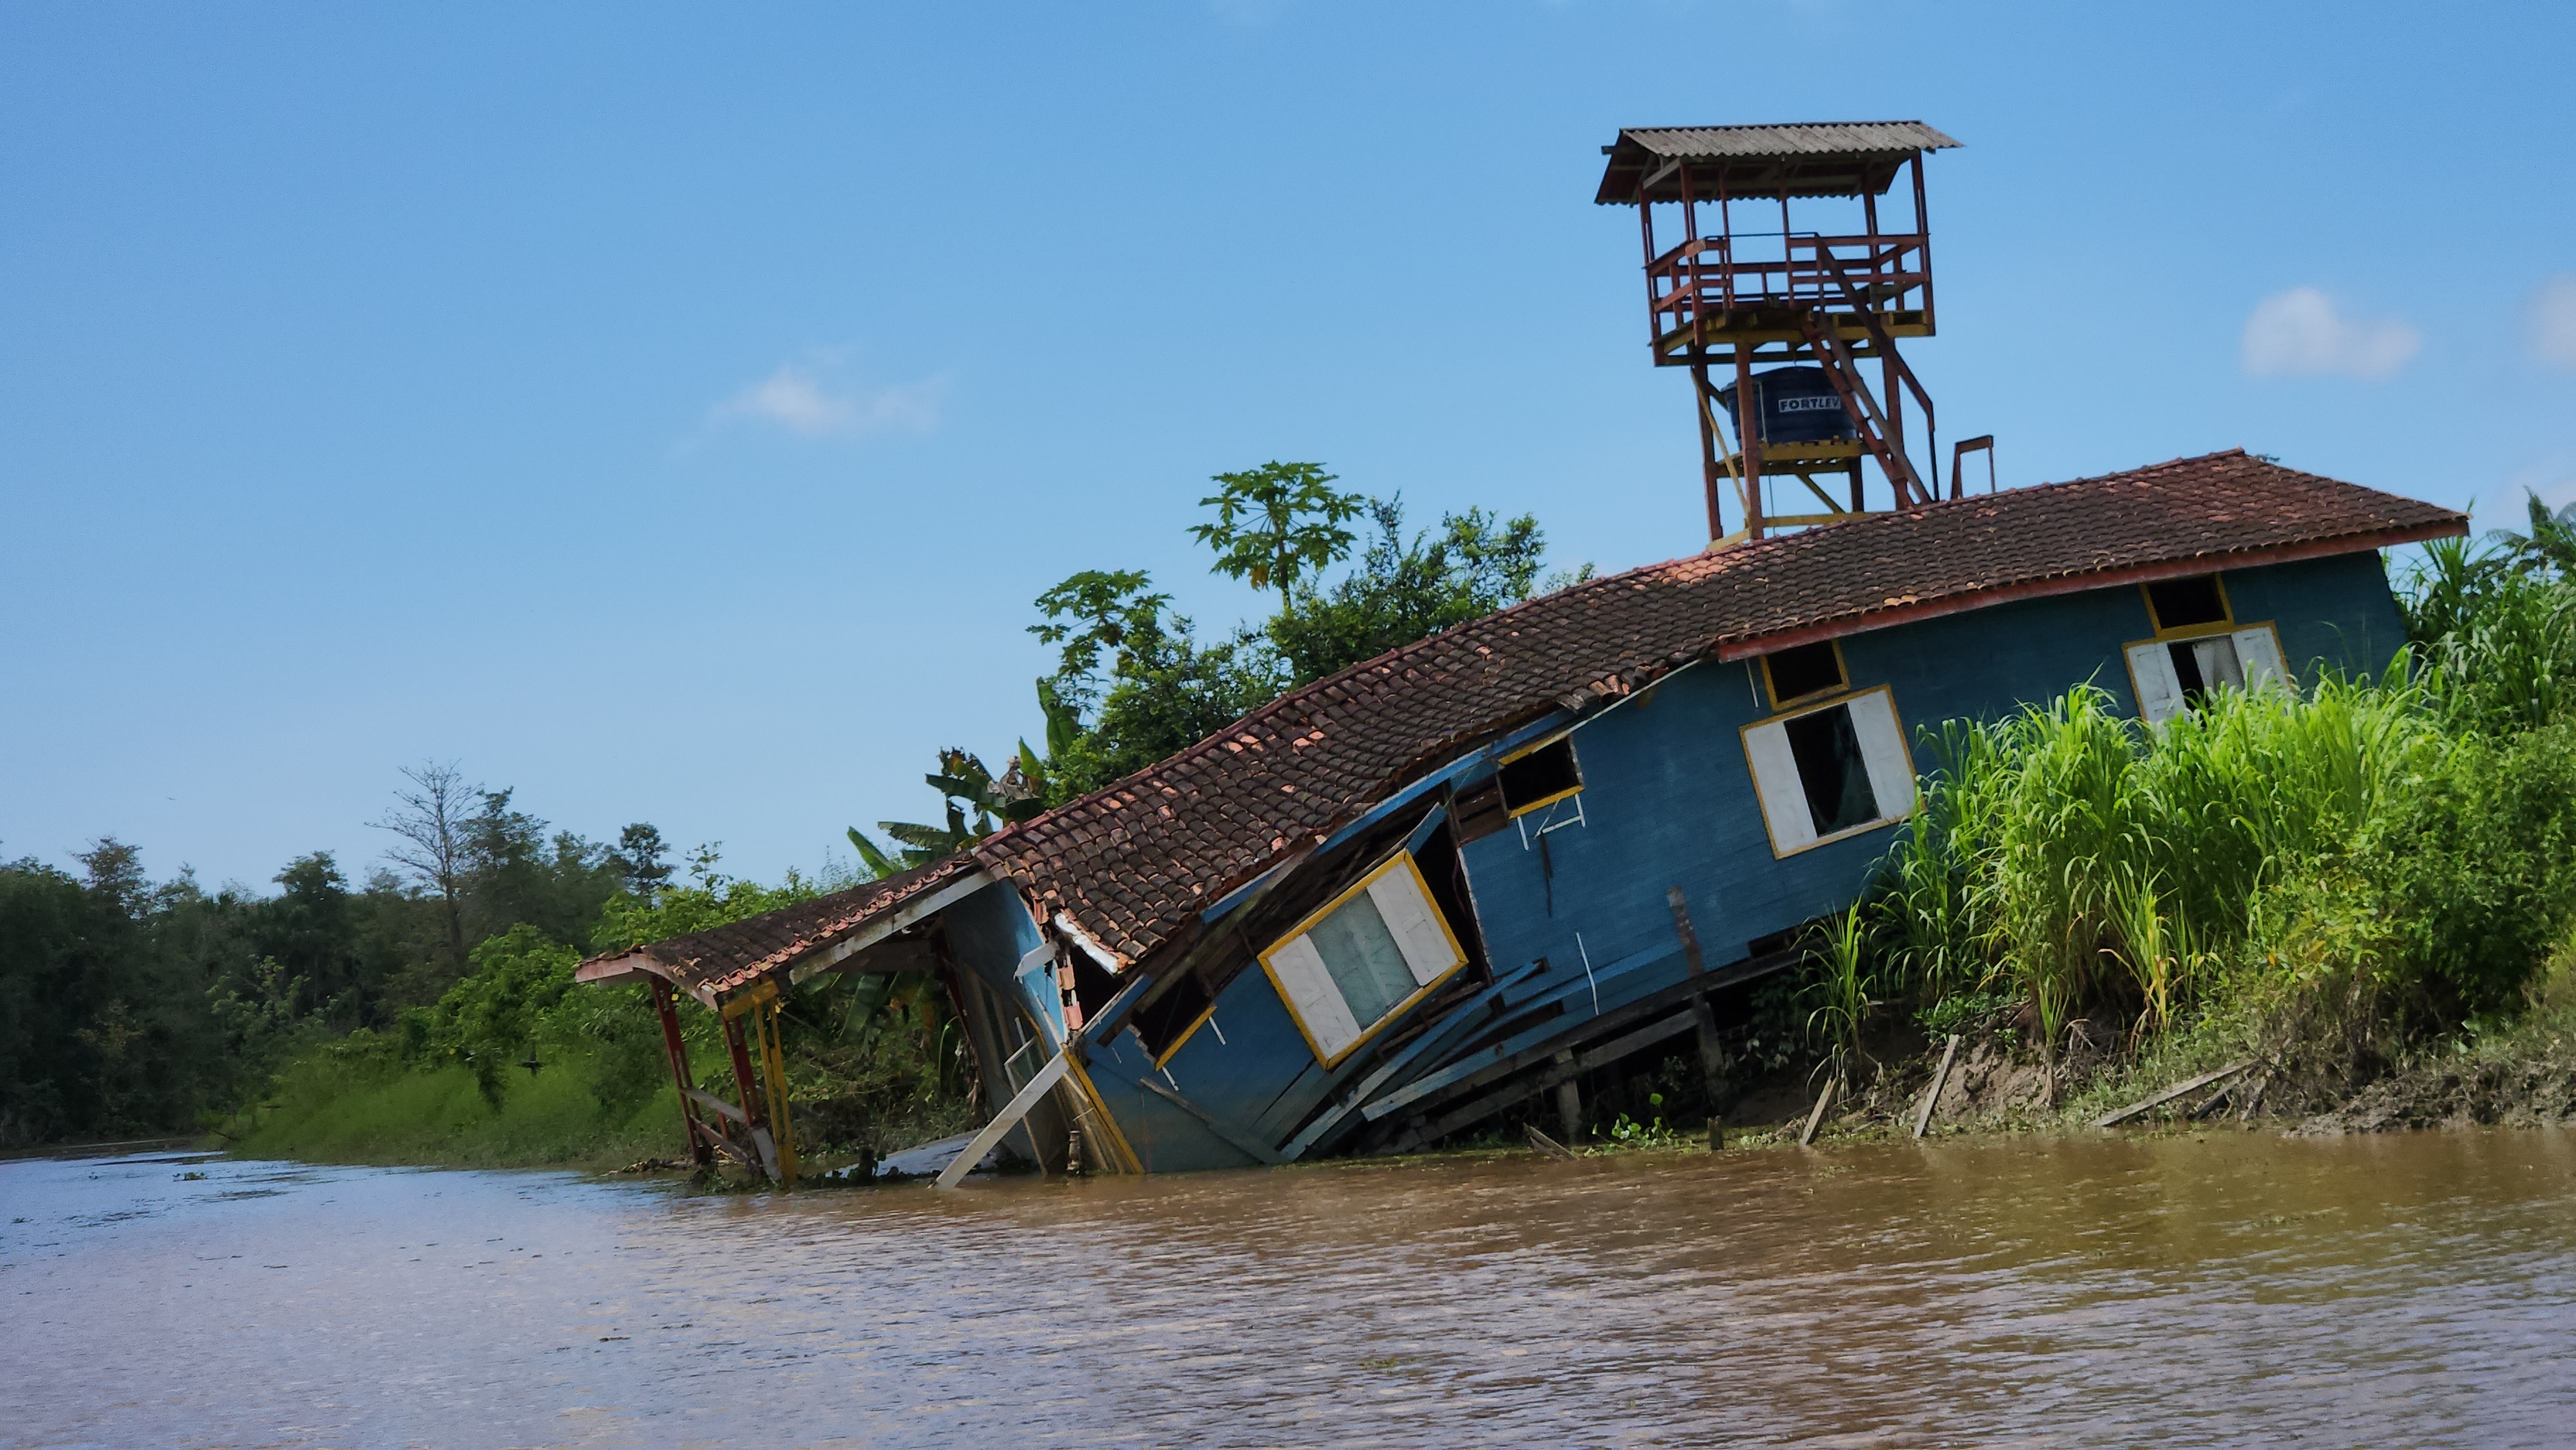 'Terras caídas': erosão avança e ribeirinhos abandonam casas no litoral do Amapá